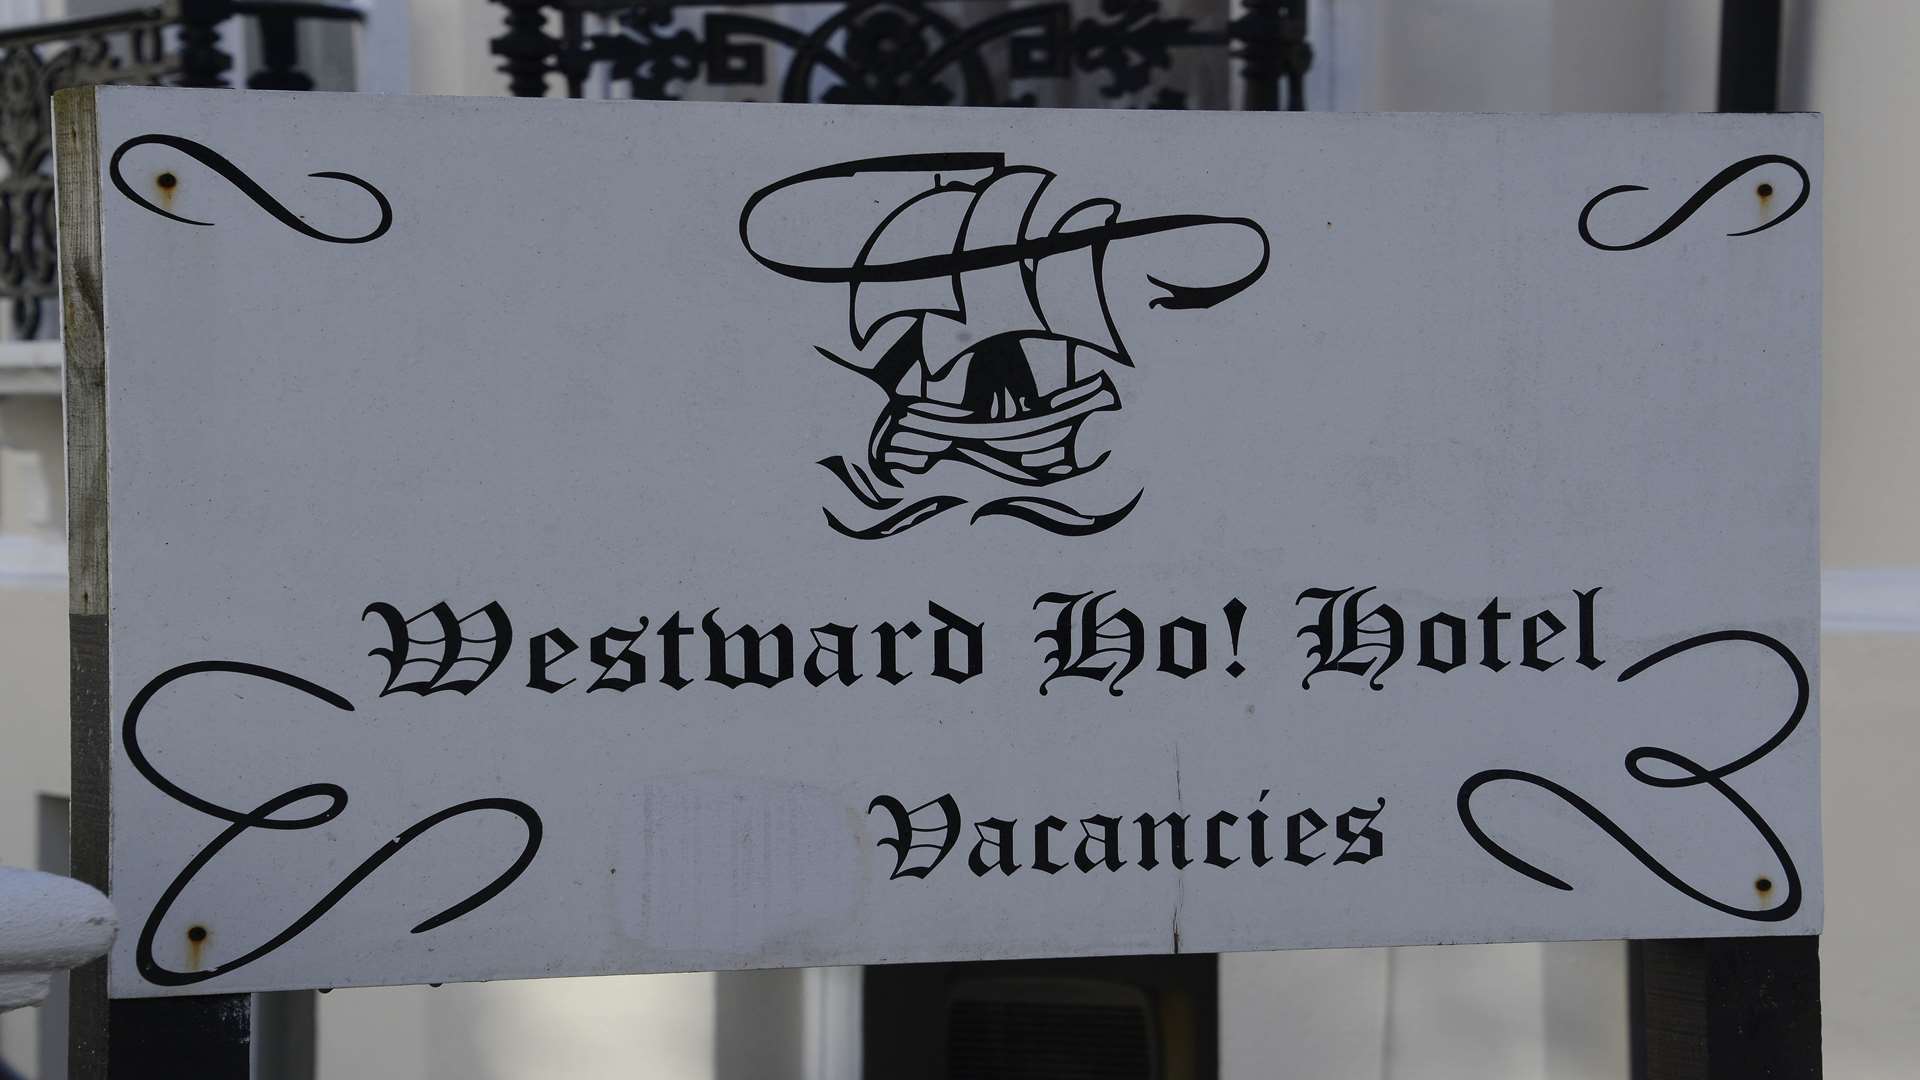 The sign showing vacancies at the Westward Ho! hotel